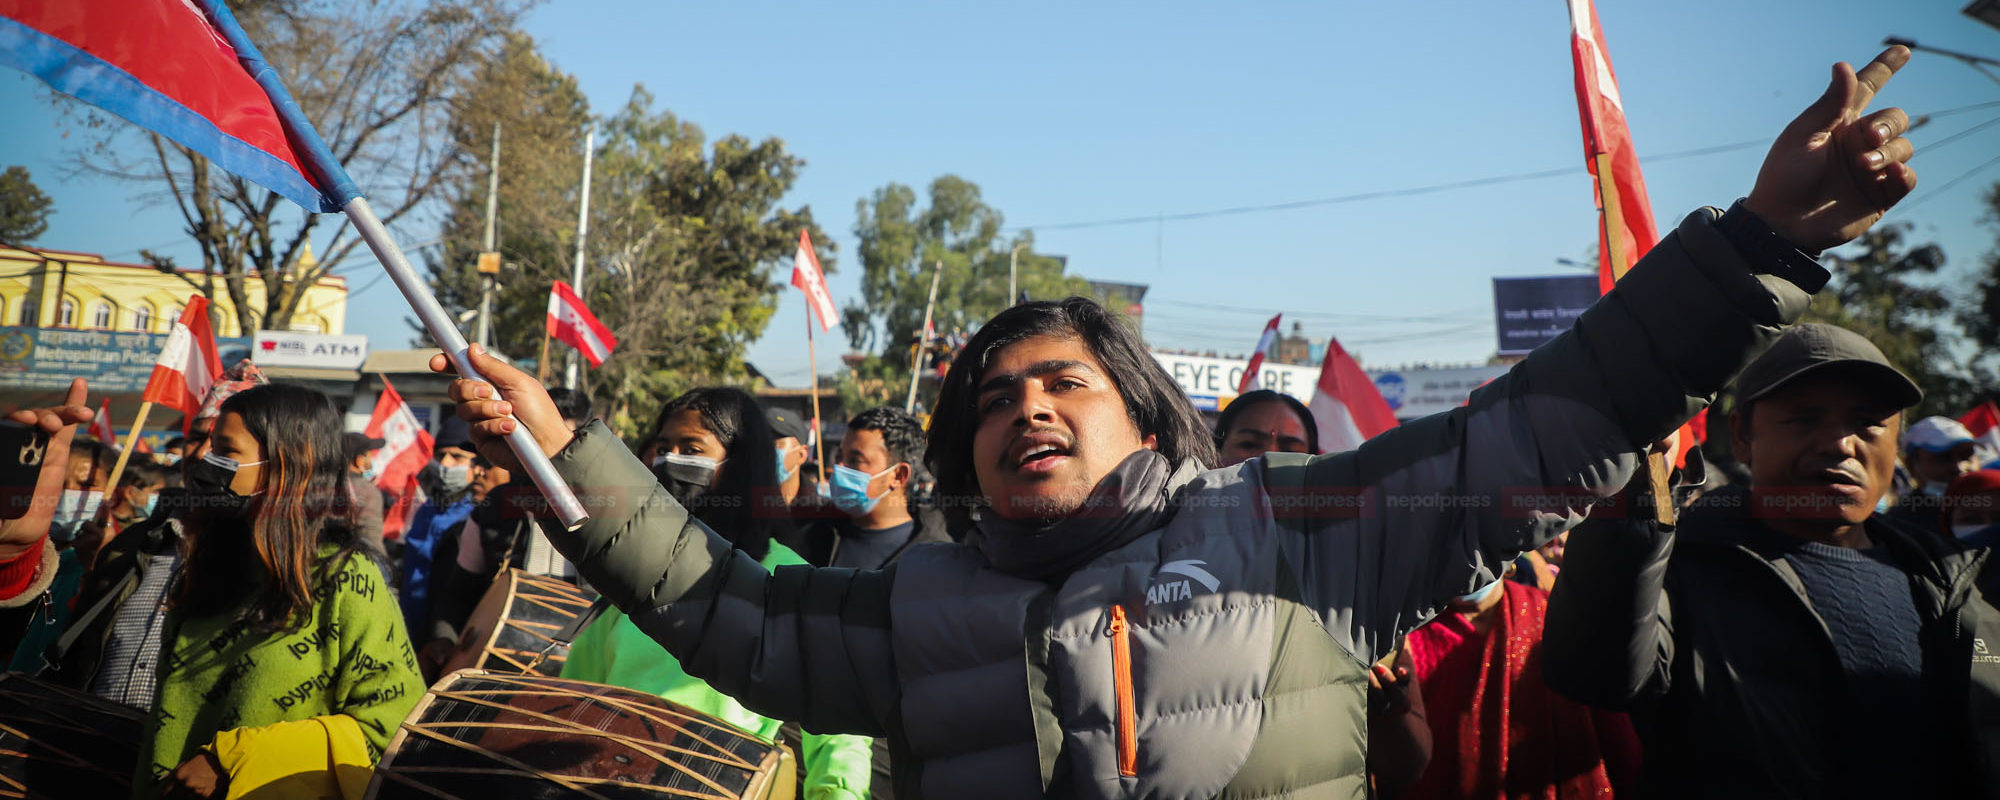 काठमाडौंमा यस्तो रह्यो कांग्रेसको प्रदर्शन (फोटोफिचर)